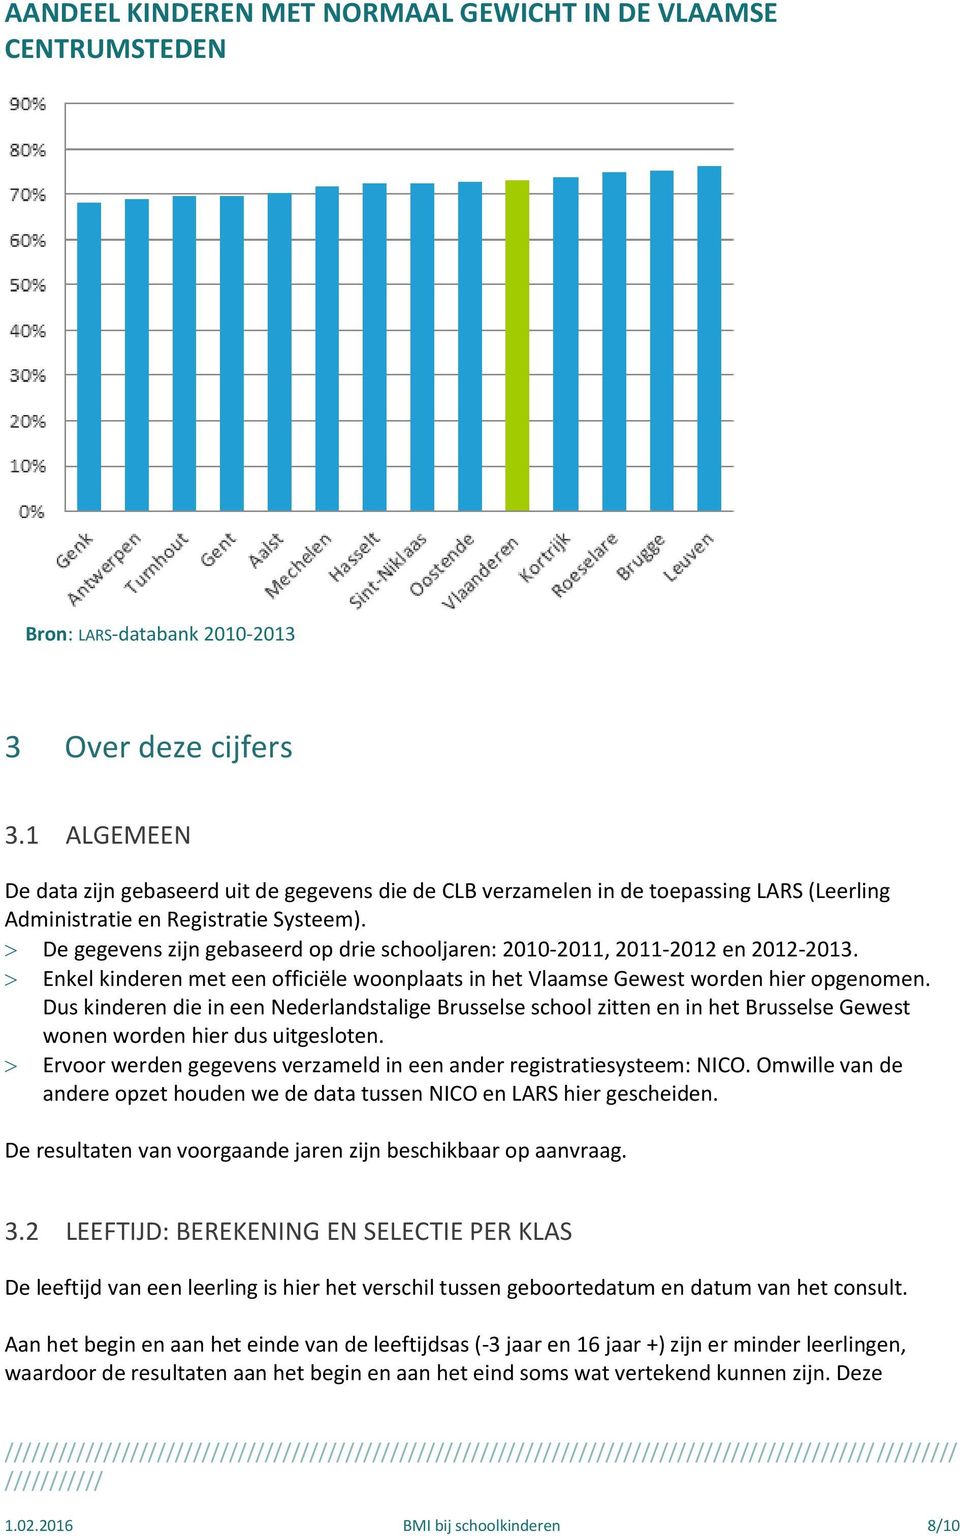 De gegevens zijn gebaseerd op drie schooljaren: 2010-2011, 2011-2012 en 2012-2013. Enkel kinderen met een officiële woonplaats in het Vlaamse Gewest worden hier opgenomen.